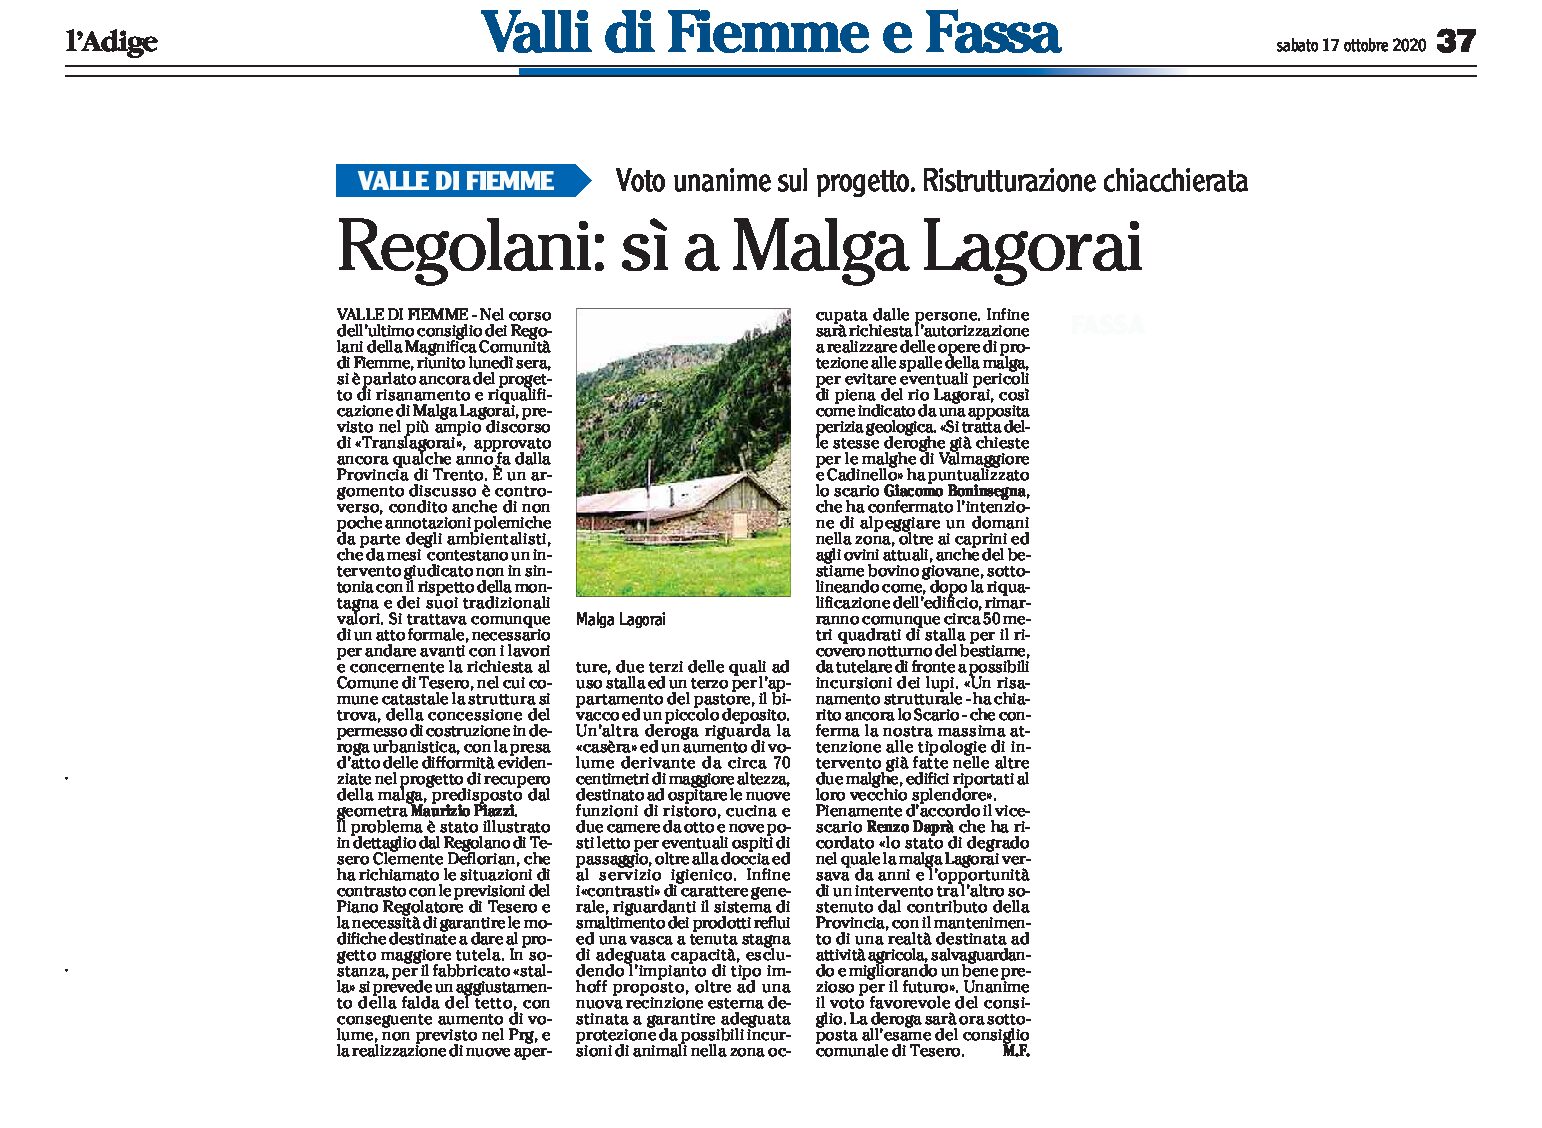 Valle di Fiemme: Regolani, sì a Malga Lagorai. Voto unanime sul progetto